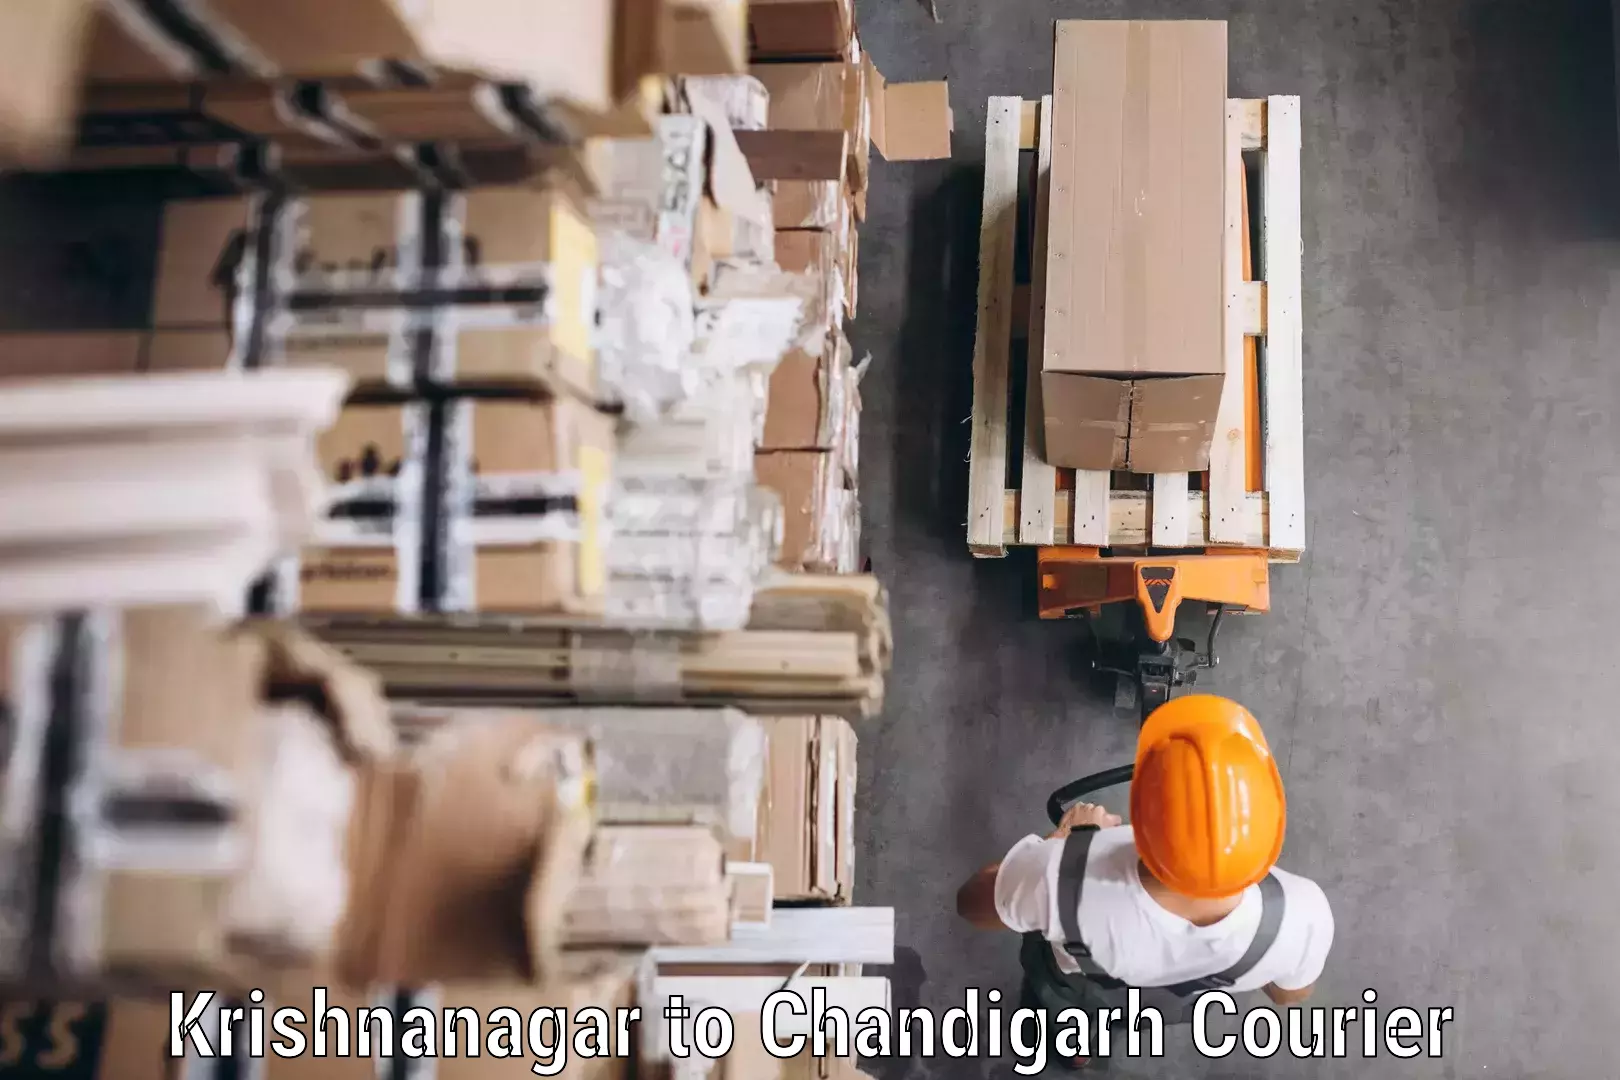 Nationwide parcel services Krishnanagar to Chandigarh